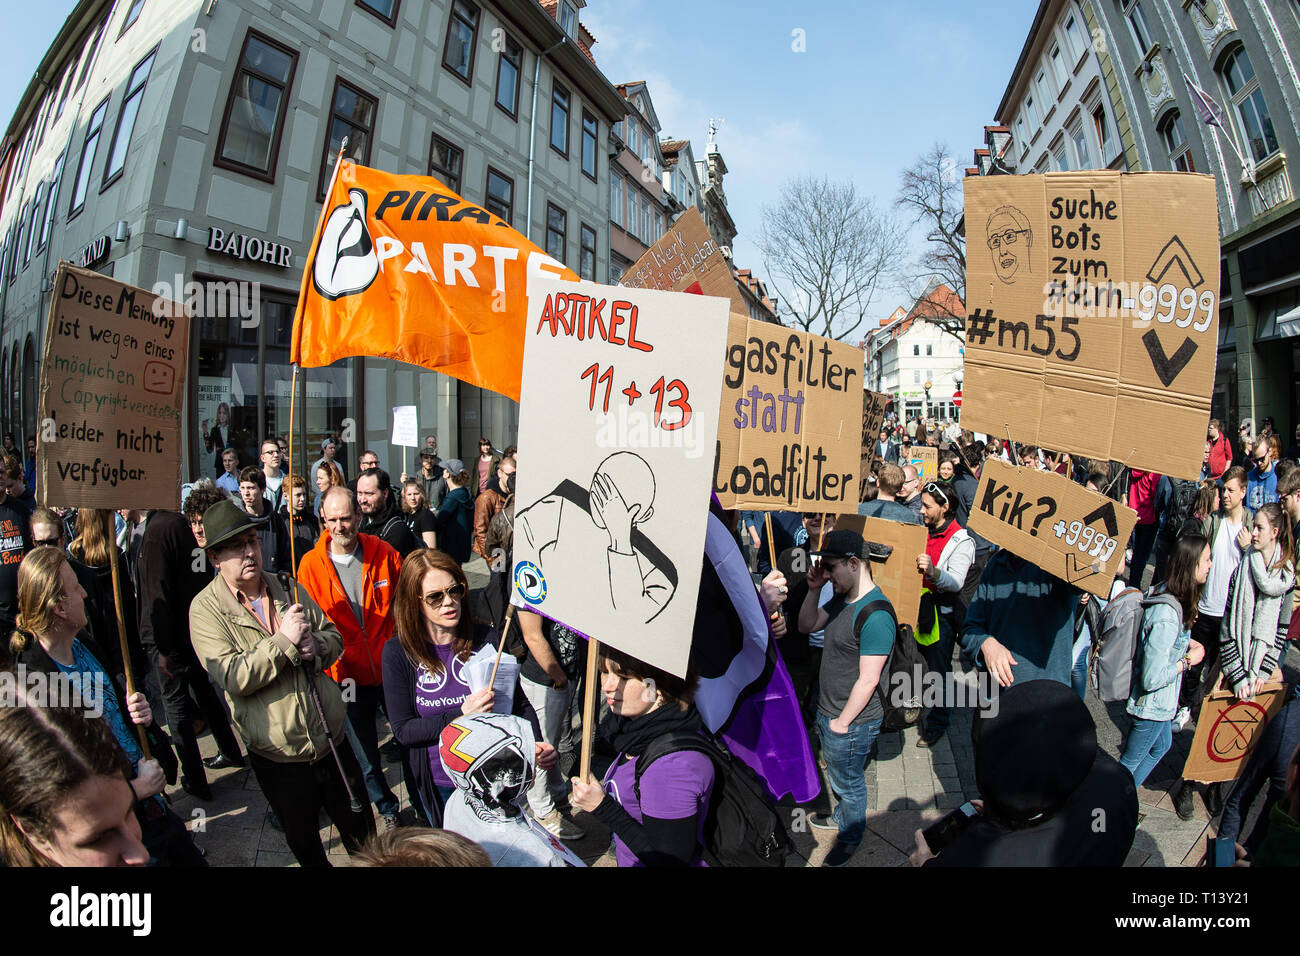 23 mars 2019, Basse-Saxe, Göttingen : les participants avec bannières et drapeaux fera preuve sous la devise 'enregistrer votre Internet' contre les filtres de téléchargement à l'occasion de la réforme du droit d'auteur de l'UE prévue. Peu avant le vote décisif sur la réforme du droit d'auteur dans l'UE Parlement européen, des milliers en Europe ont protesté contre le projet. Les adversaires de la réforme et en particulier de l'article 13 avait annoncé des manifestations dans près de 20 pays. Photo : Swen Pförtner/dpa Banque D'Images